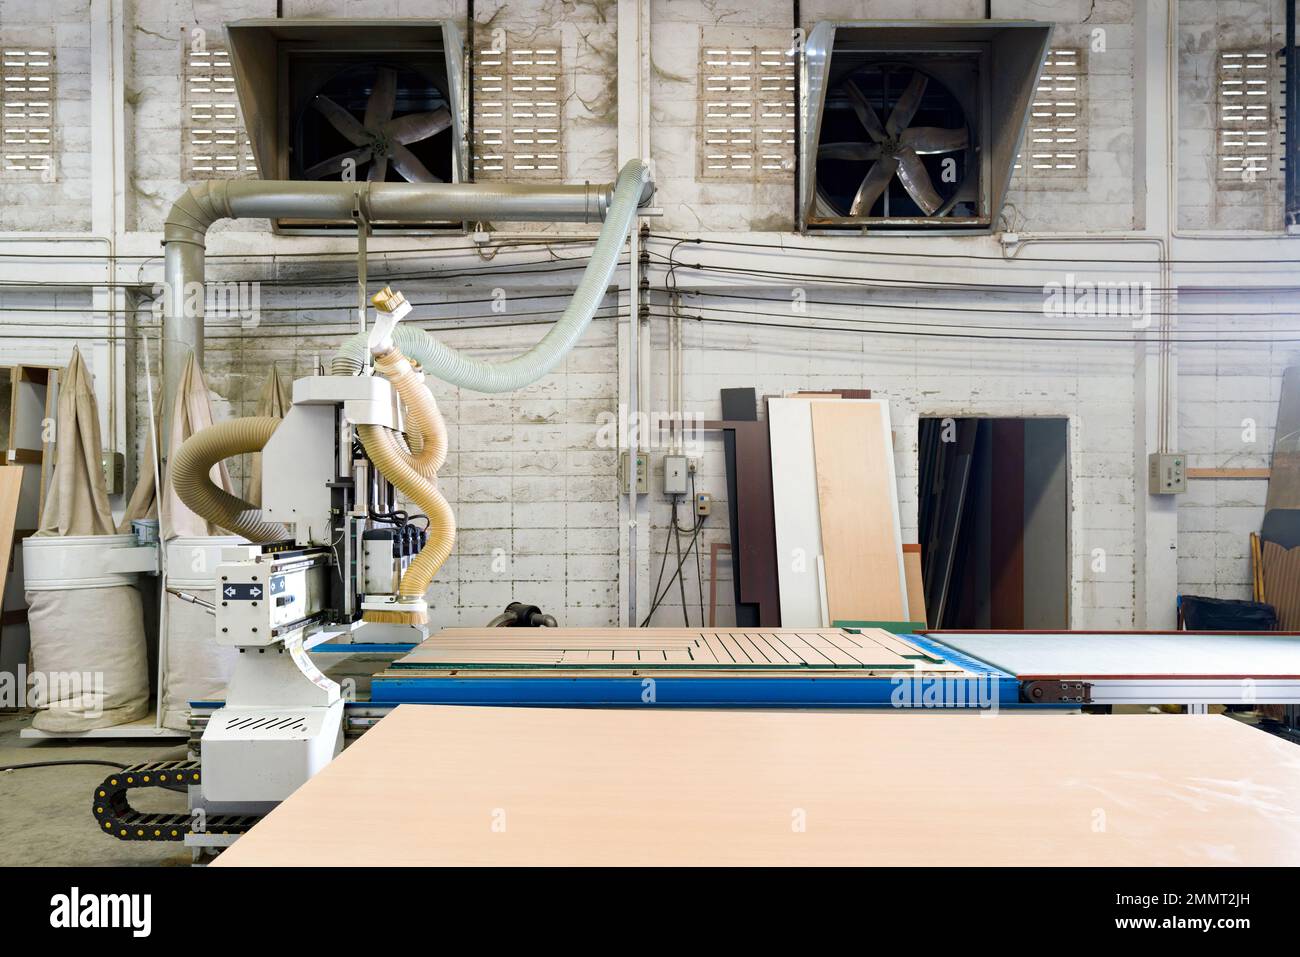 Table de travail entièrement chargée de contreplaqué dans une usine industrielle produisant des pièces de meubles en bois. Un ventilateur d'extraction est installé sur un mur de briques en béton léger Banque D'Images